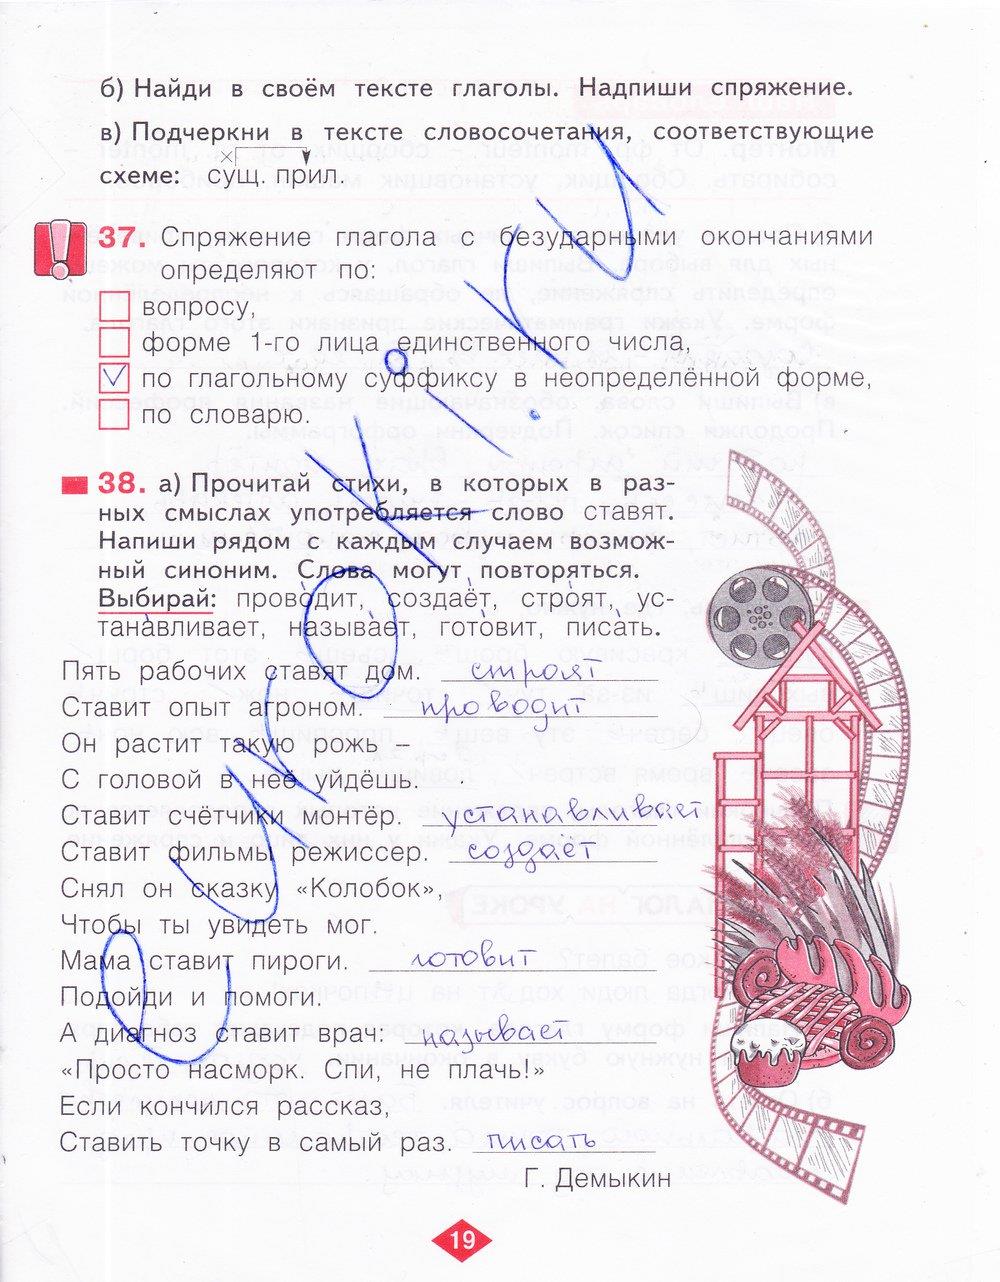 гдз 4 класс рабочая тетрадь часть 3 страница 19 русский язык Нечаева, Воскресенская